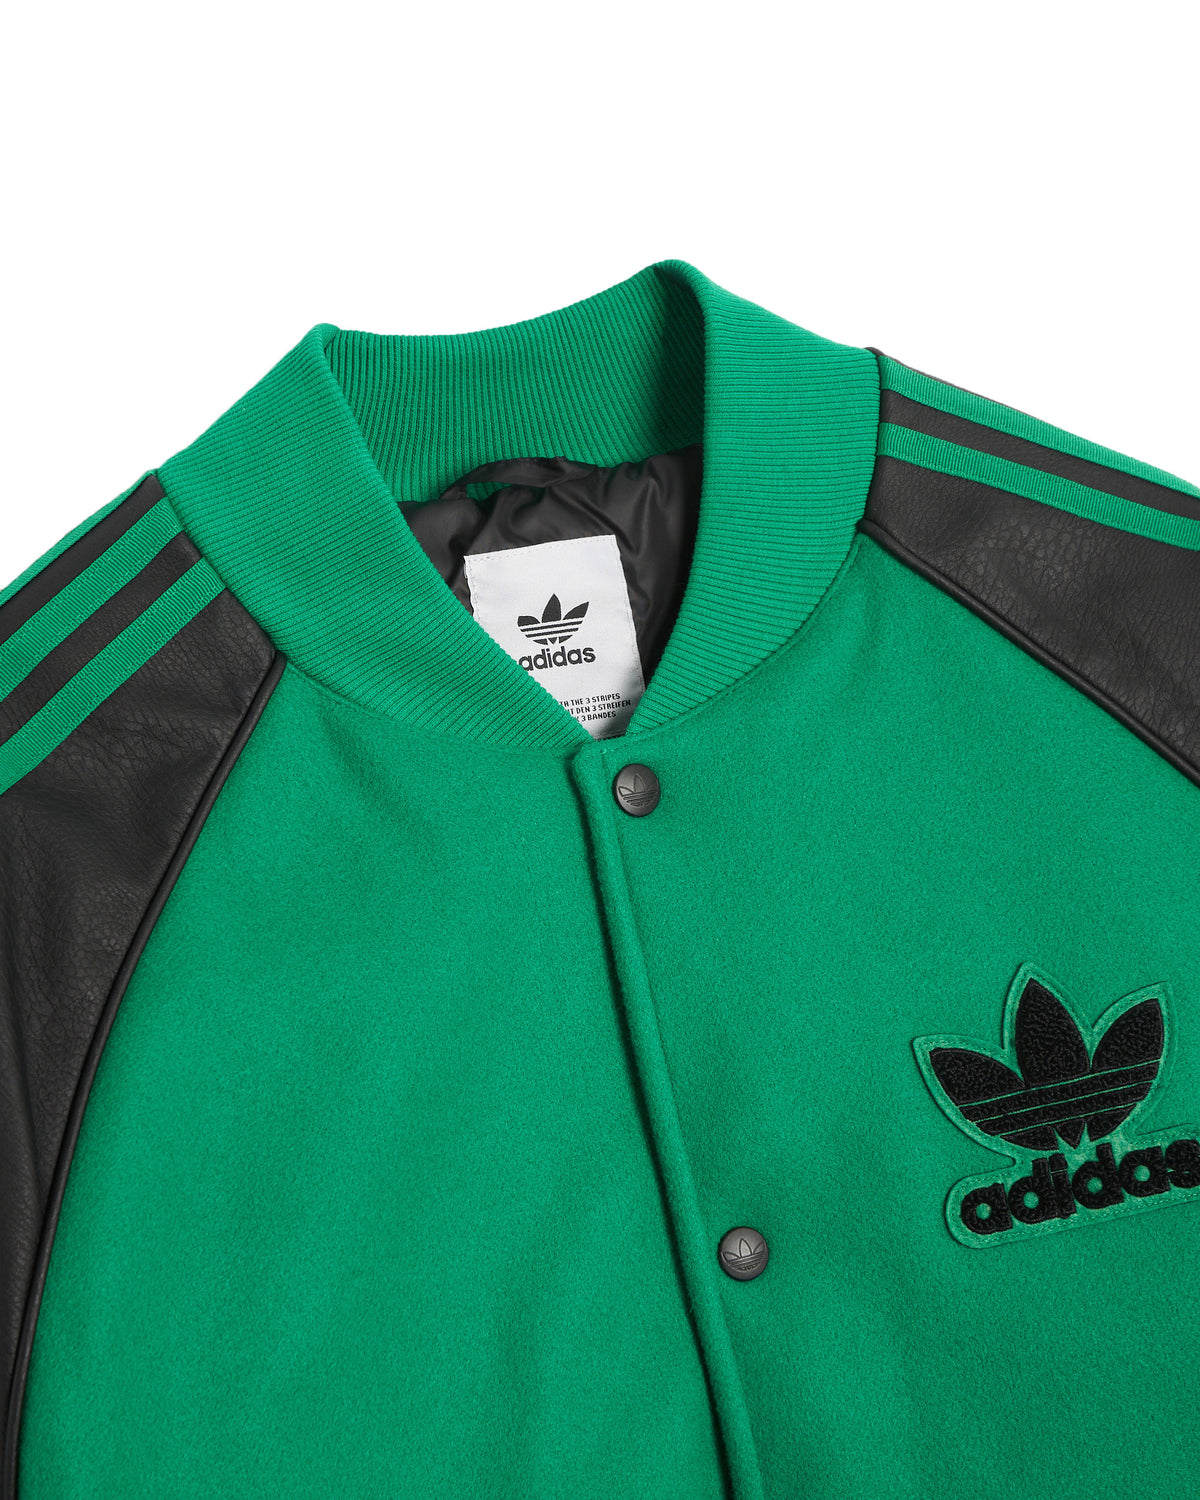 Bomber Adidas Originals Sst Varsity Green Black